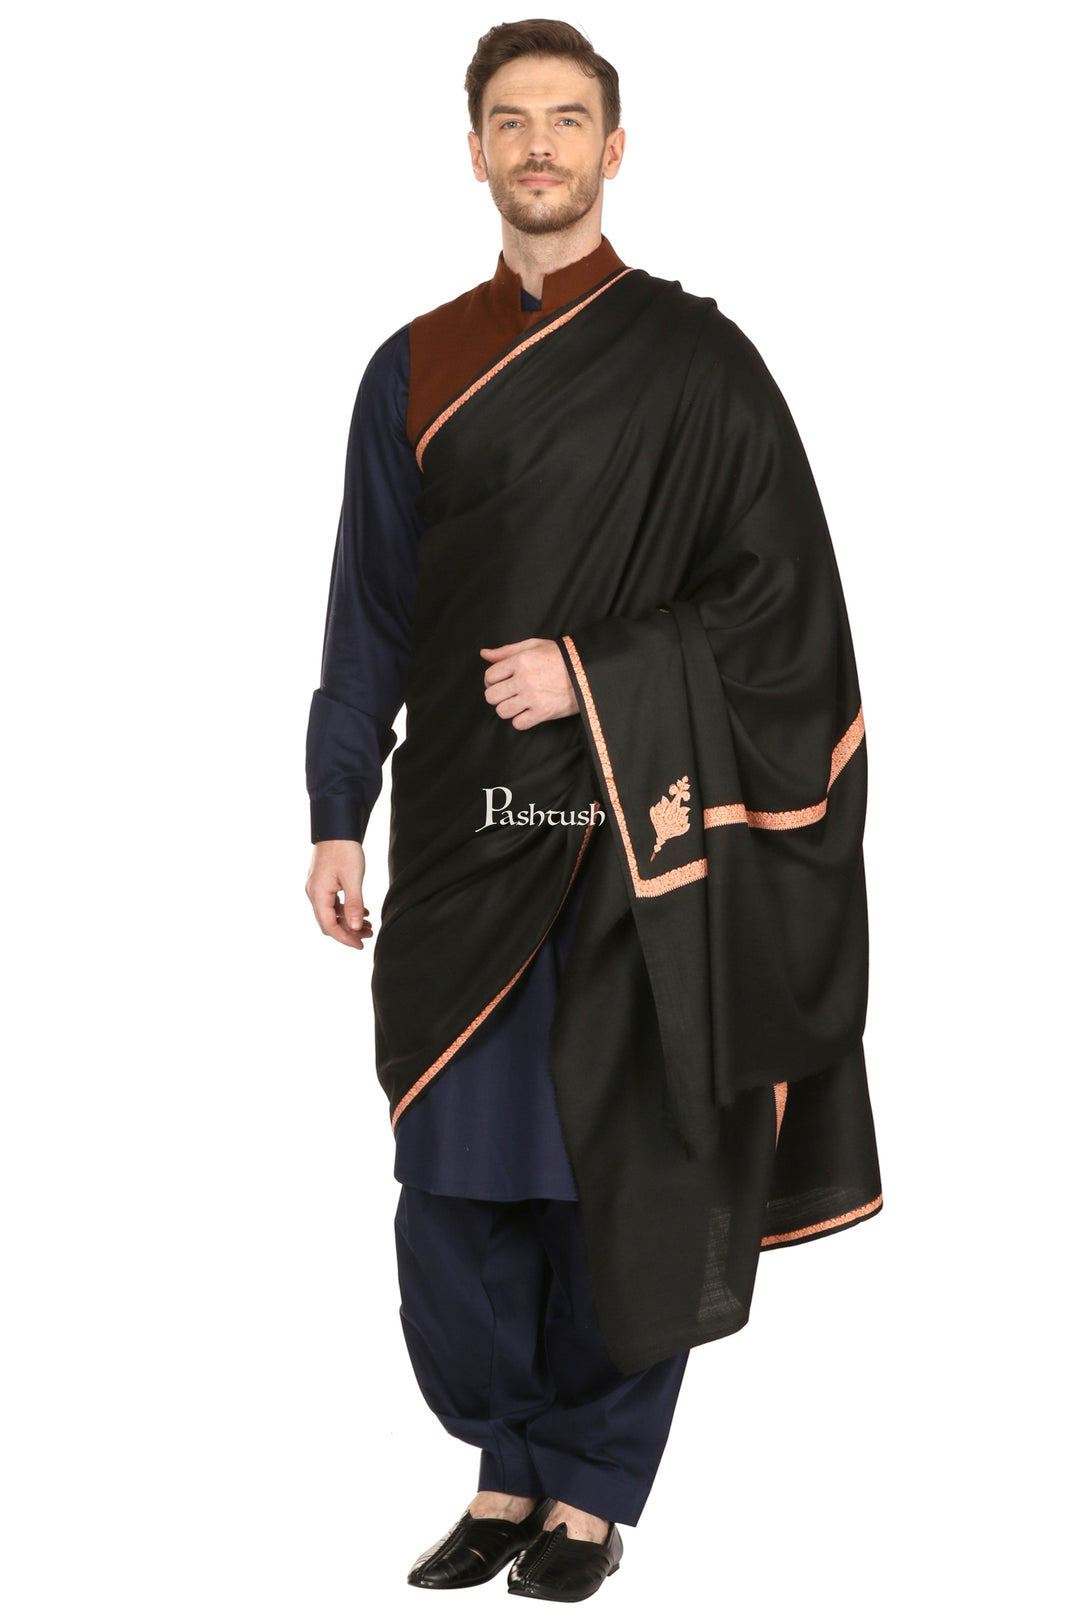 Pashtush India Mens Shawls Gents Shawl Pashtush Mens Embroidery Black Shawl, Kingri Design - Rich Black